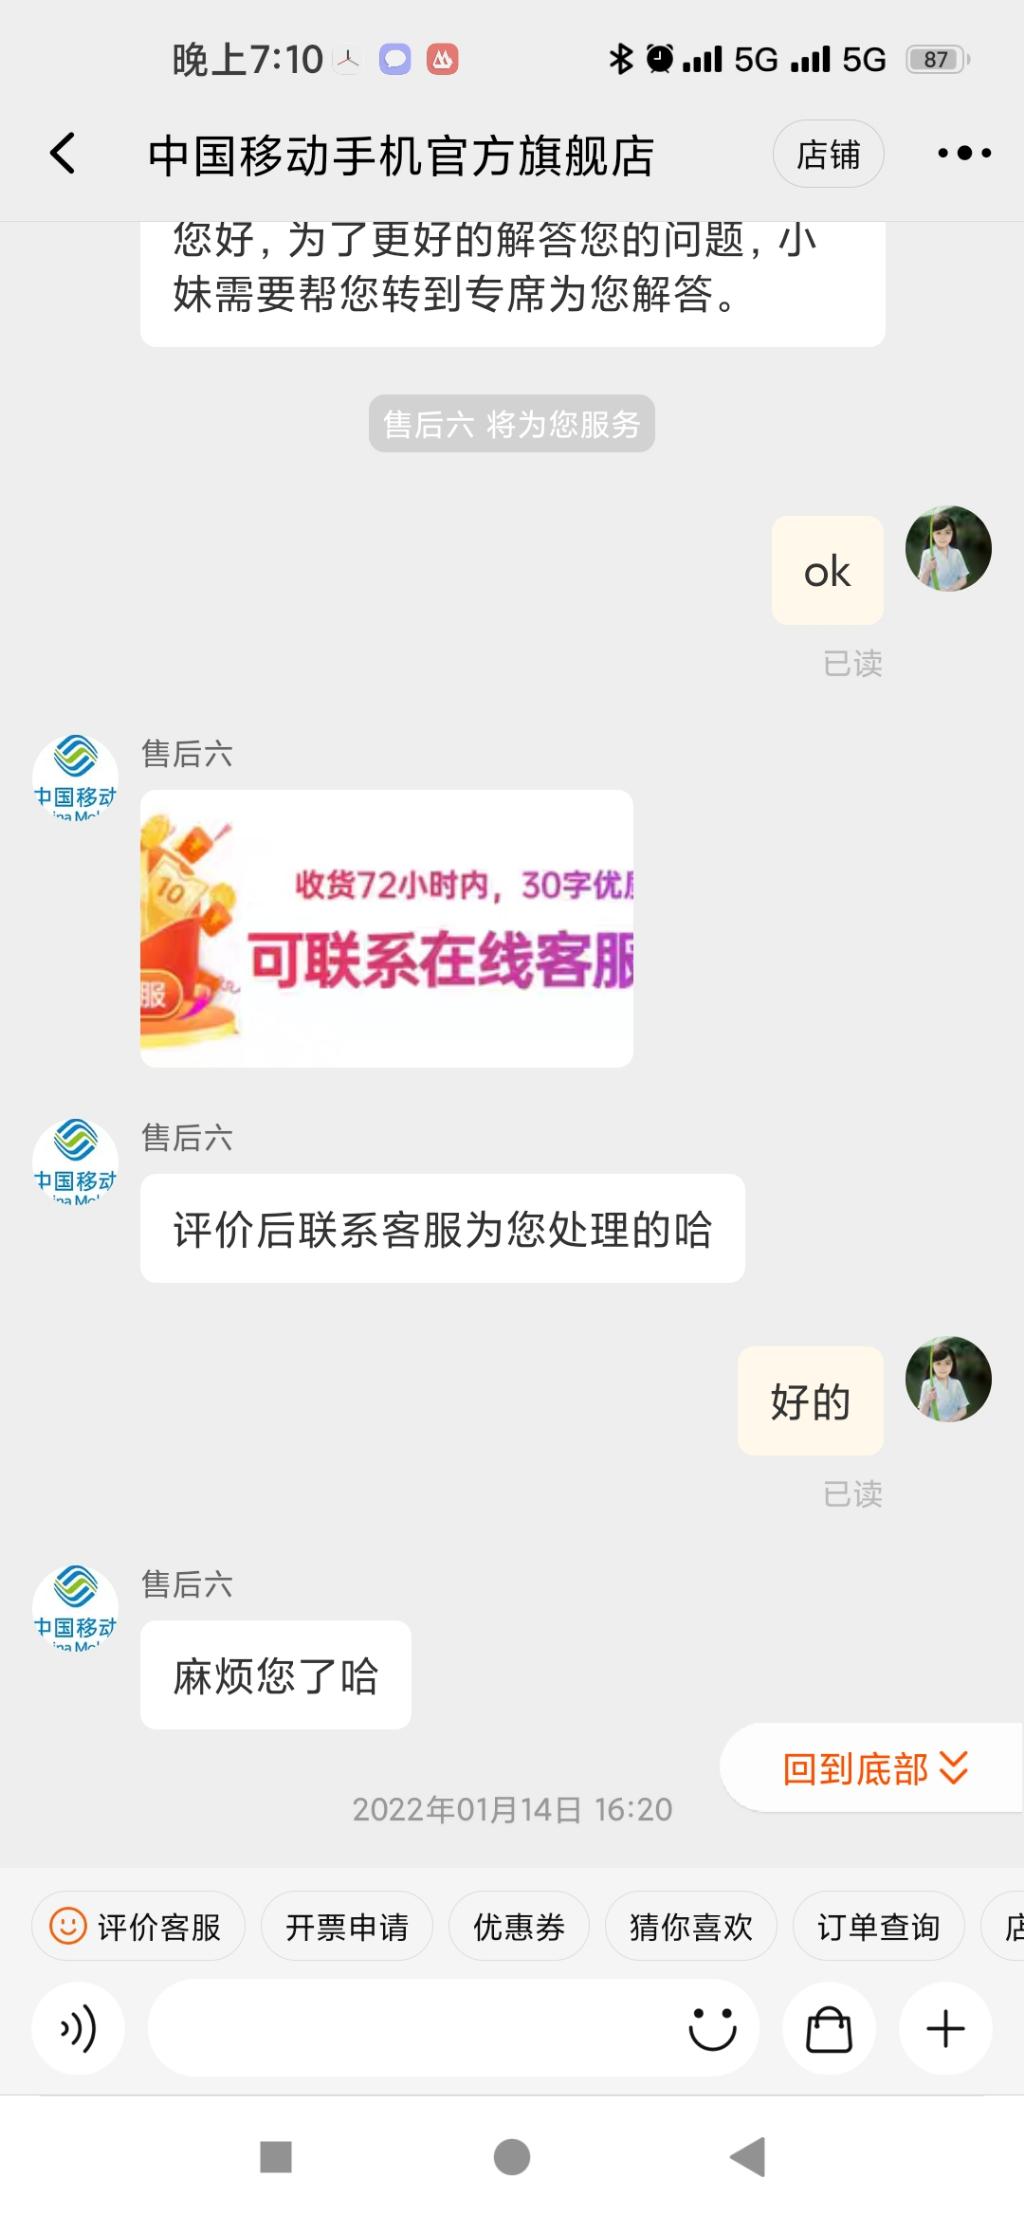 天猫中国移动手机官方旗舰店-惠小助(52huixz.com)